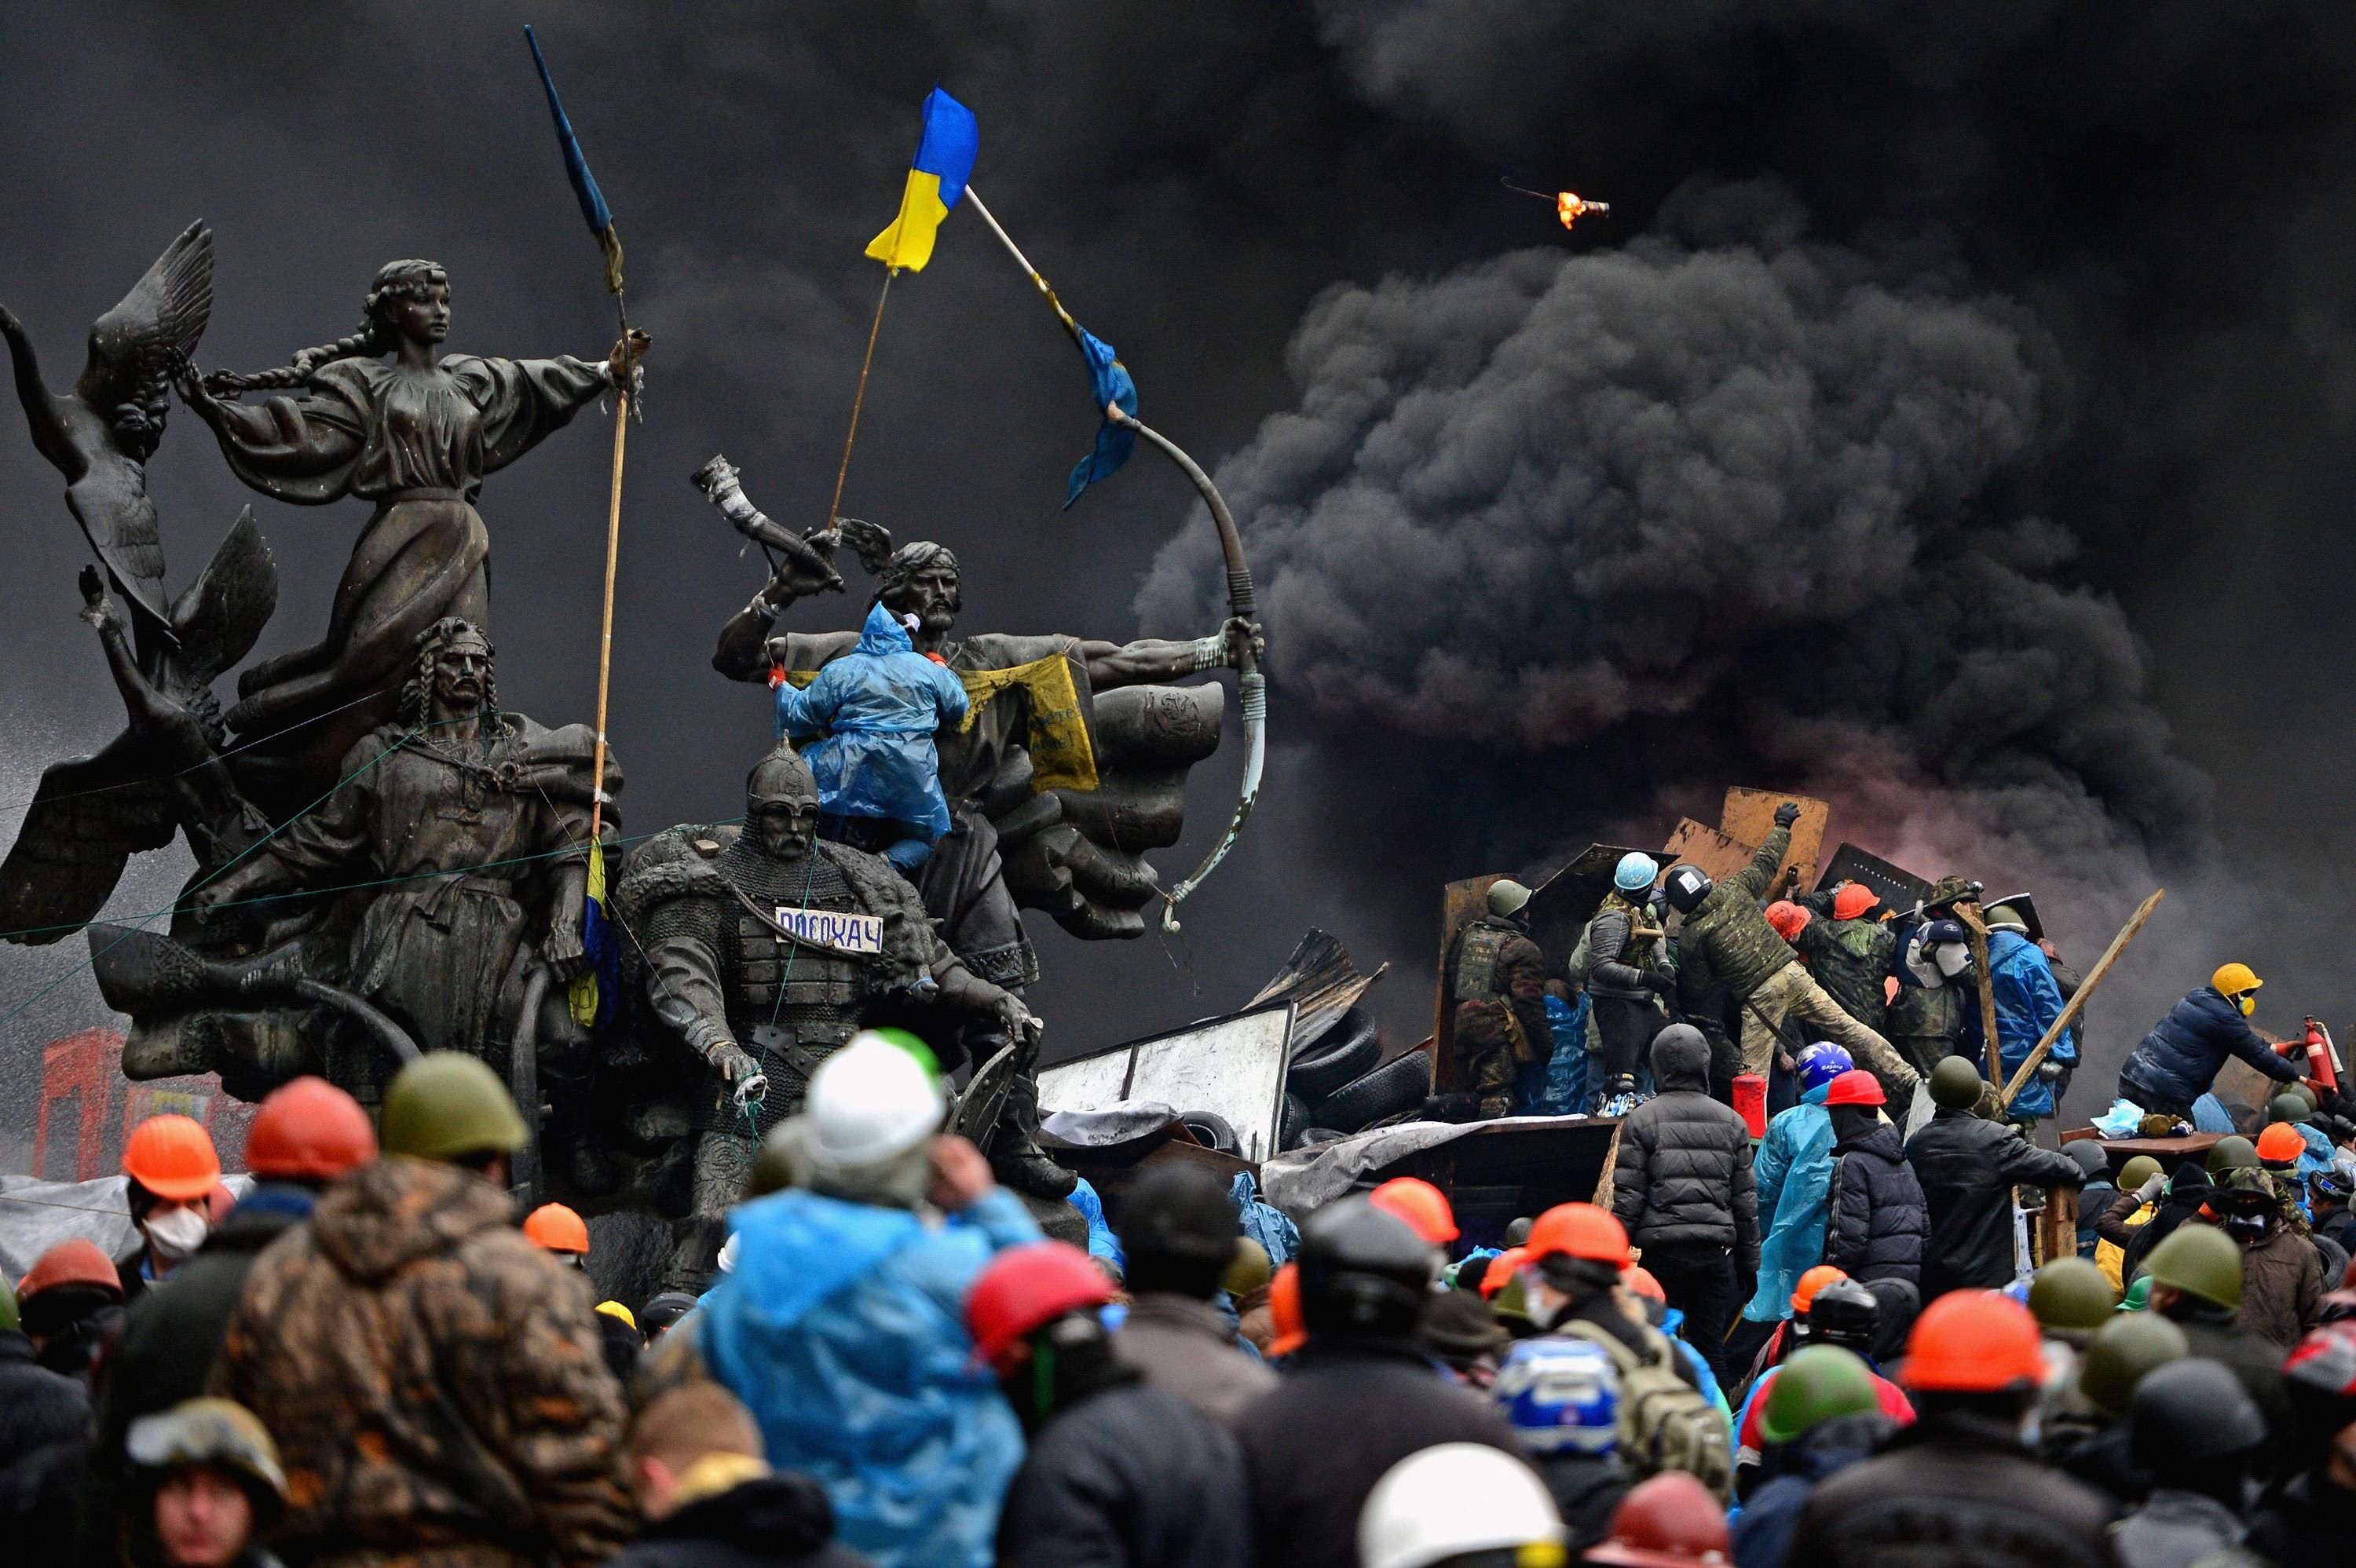 Убийцы возвращаются в политику: Стерненко поделился самыми болезненными воспоминаниями с Майдана